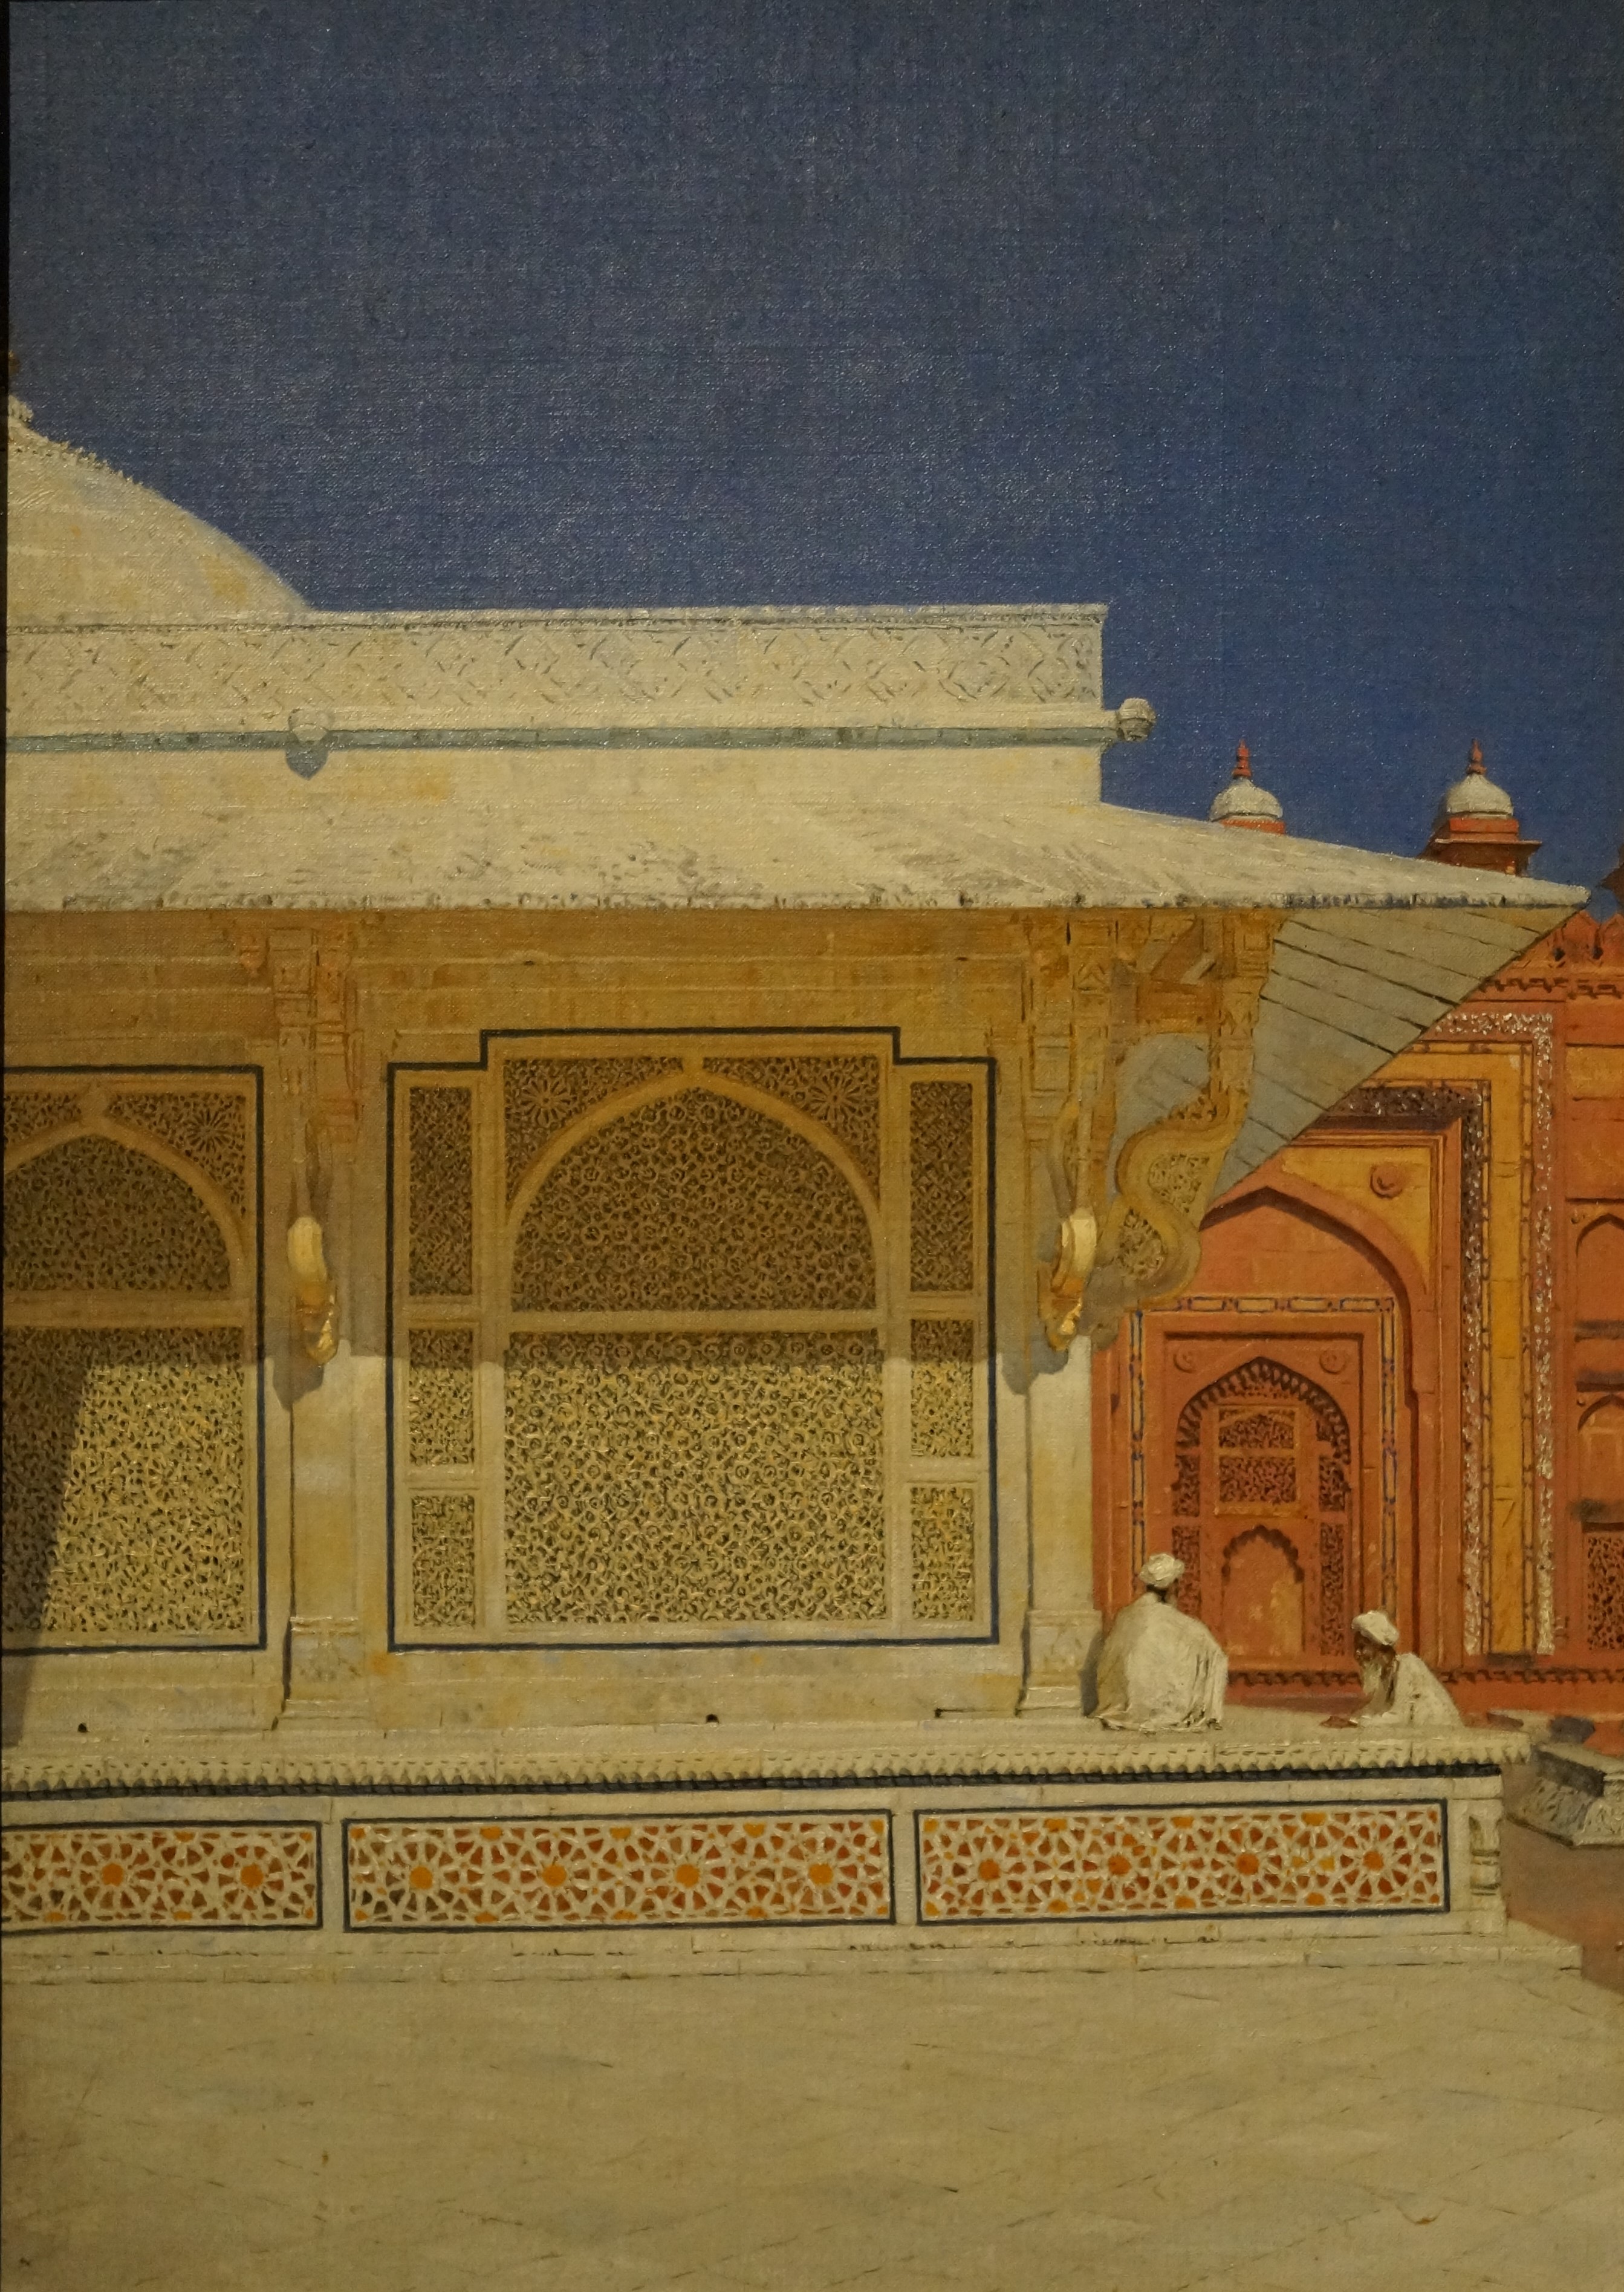 Das Grabmal von Scheich Salim Chishti in Fatehpur Sikri by Vasily Vereshchagin - 1874-1876 - 46 x 34 cm Tretjakow-Galerie